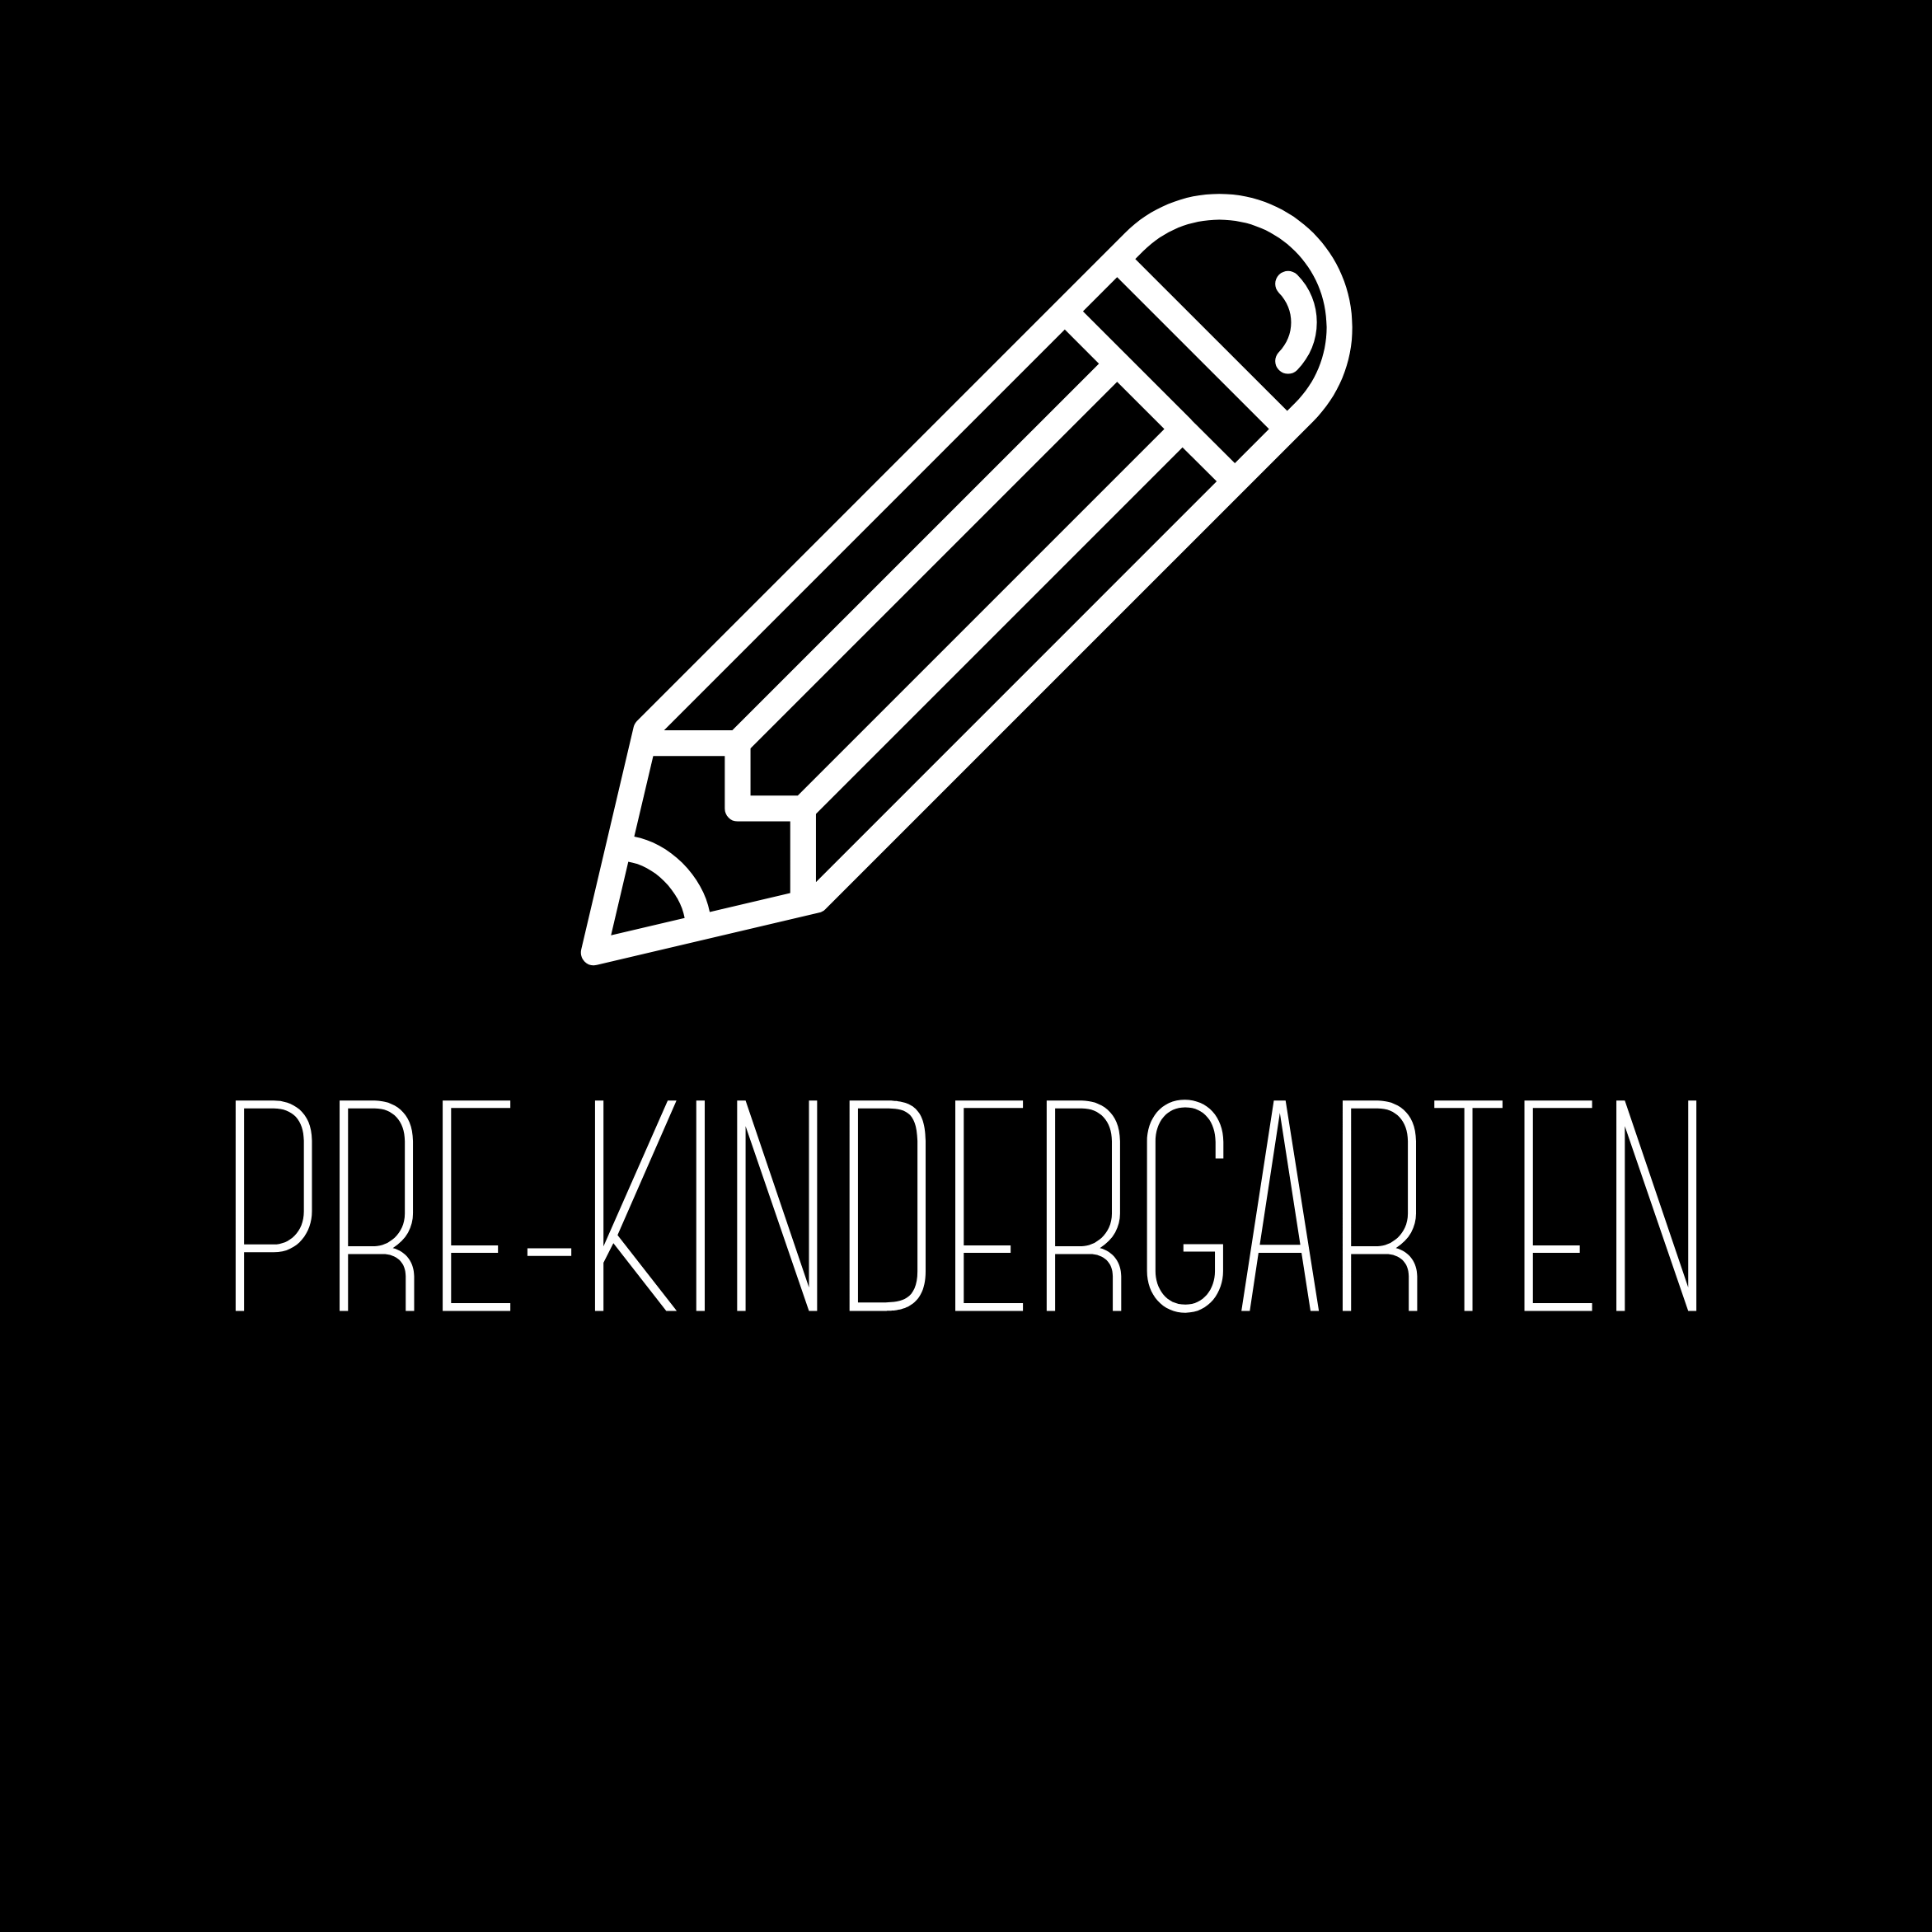 Pre-Kindergarten